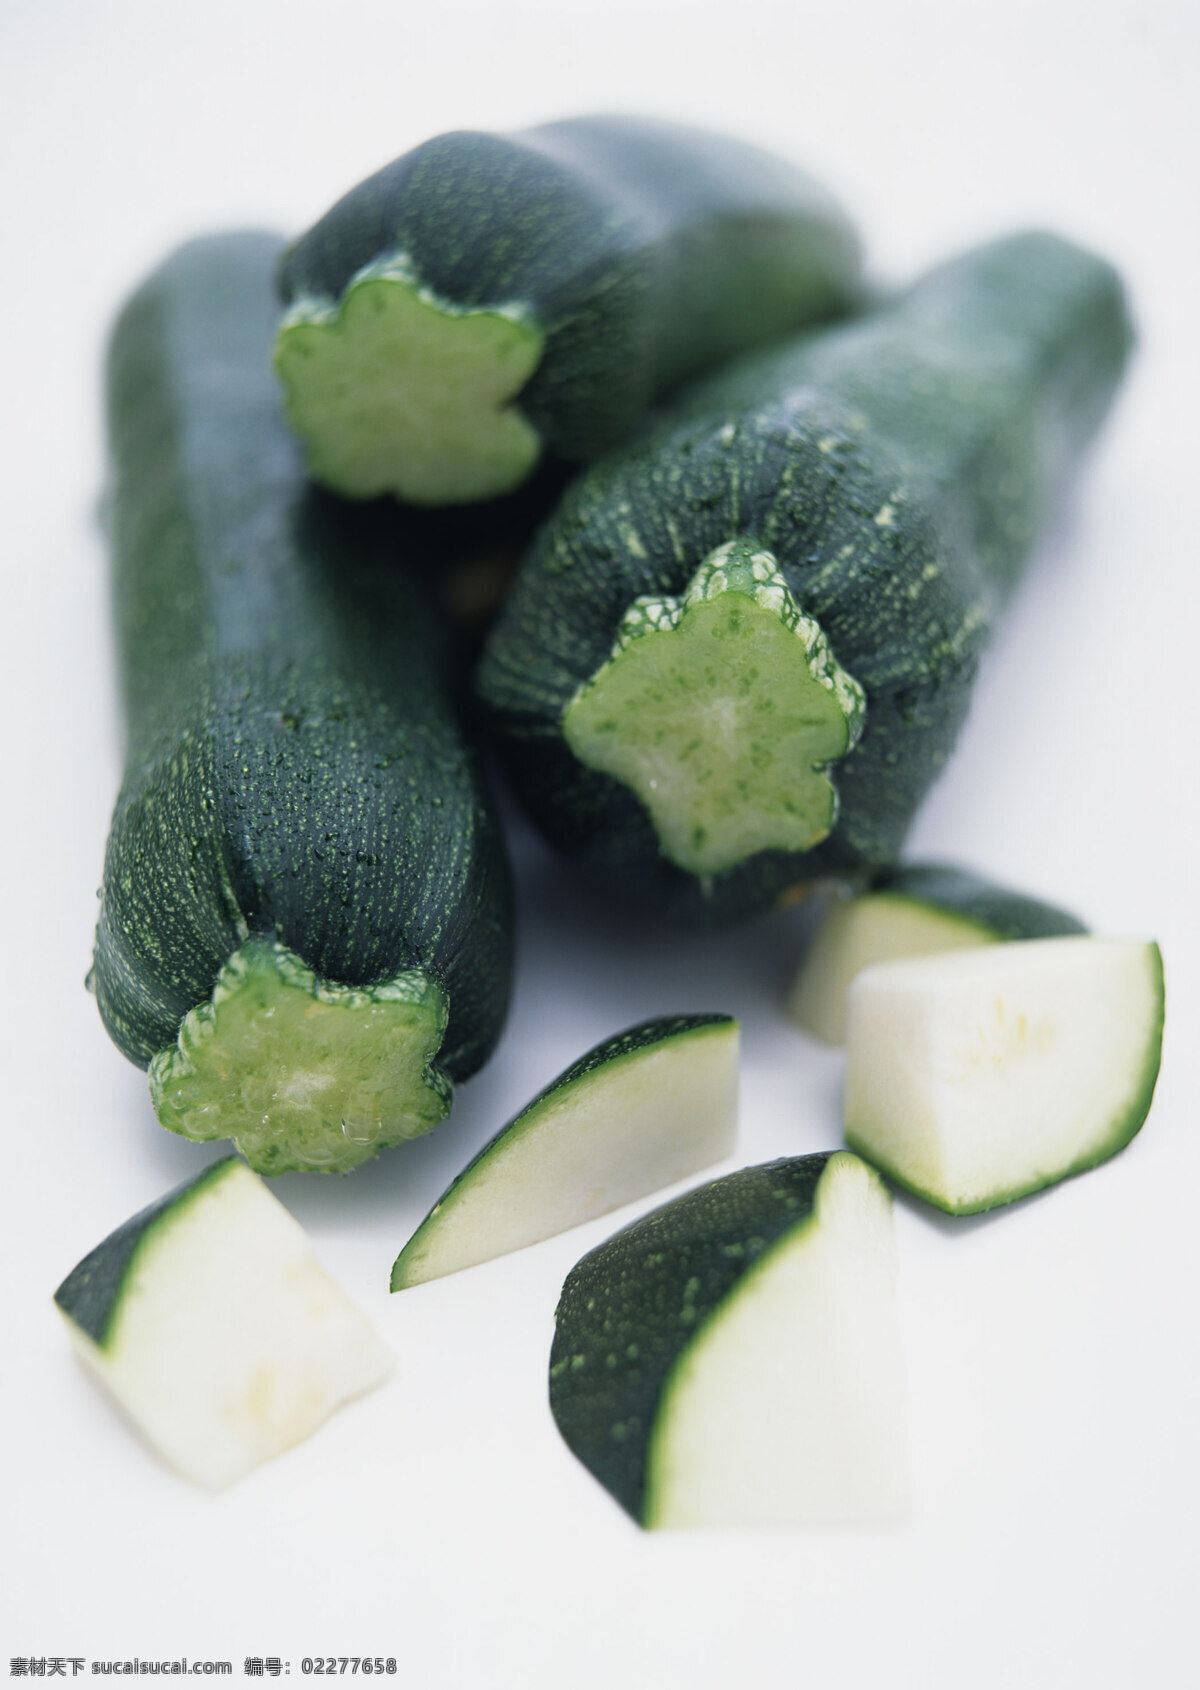 小南瓜 有机蔬菜 绿色蔬菜 农产品 菜篮子 生物世界 蔬菜